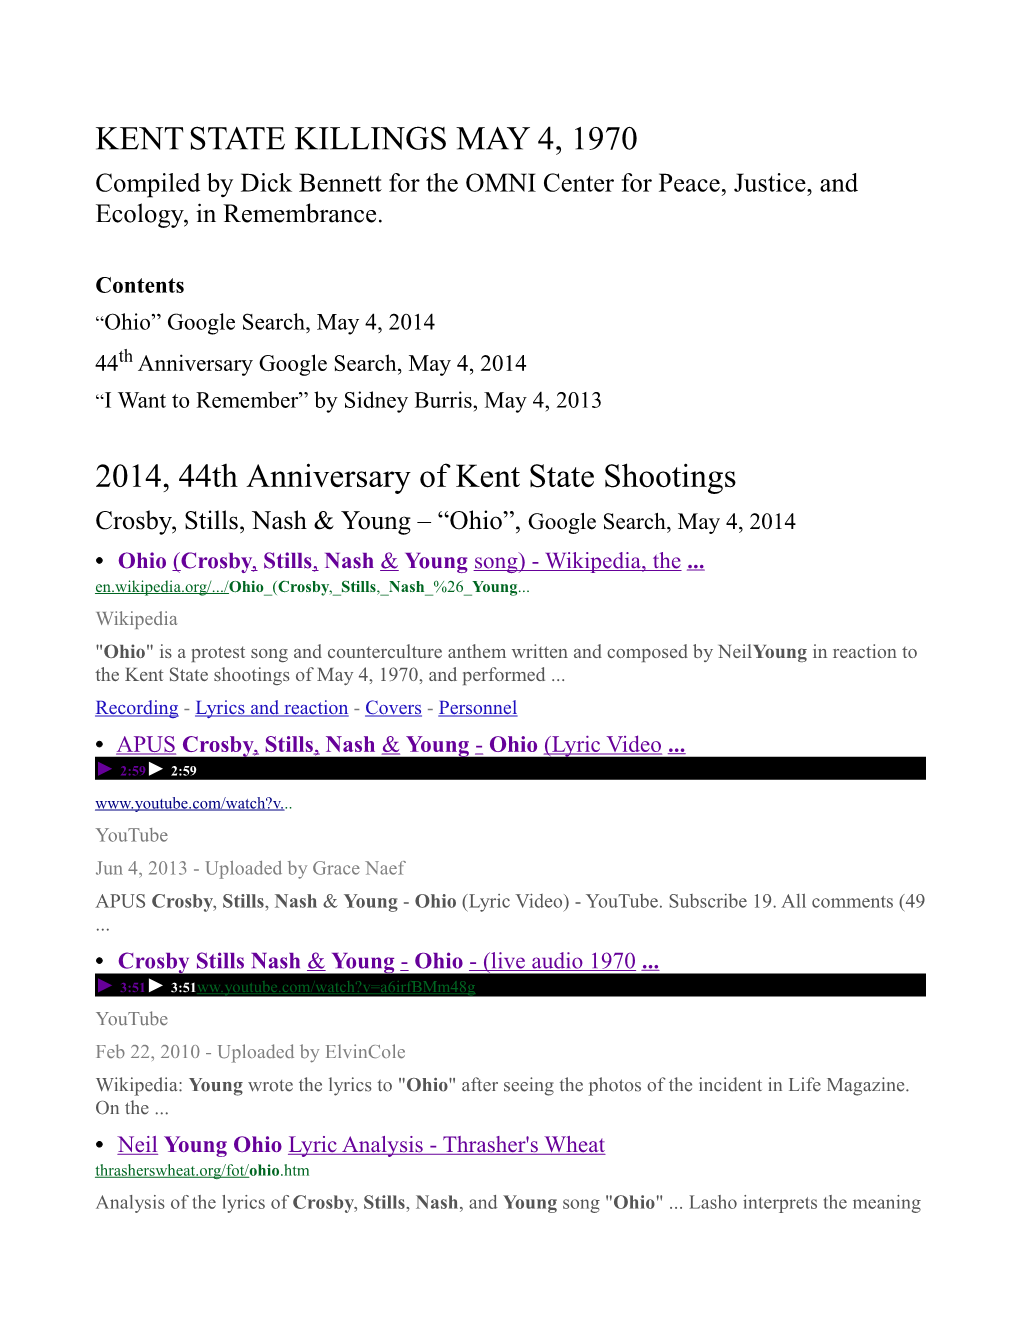 May 4, 2014, Kent State Killings